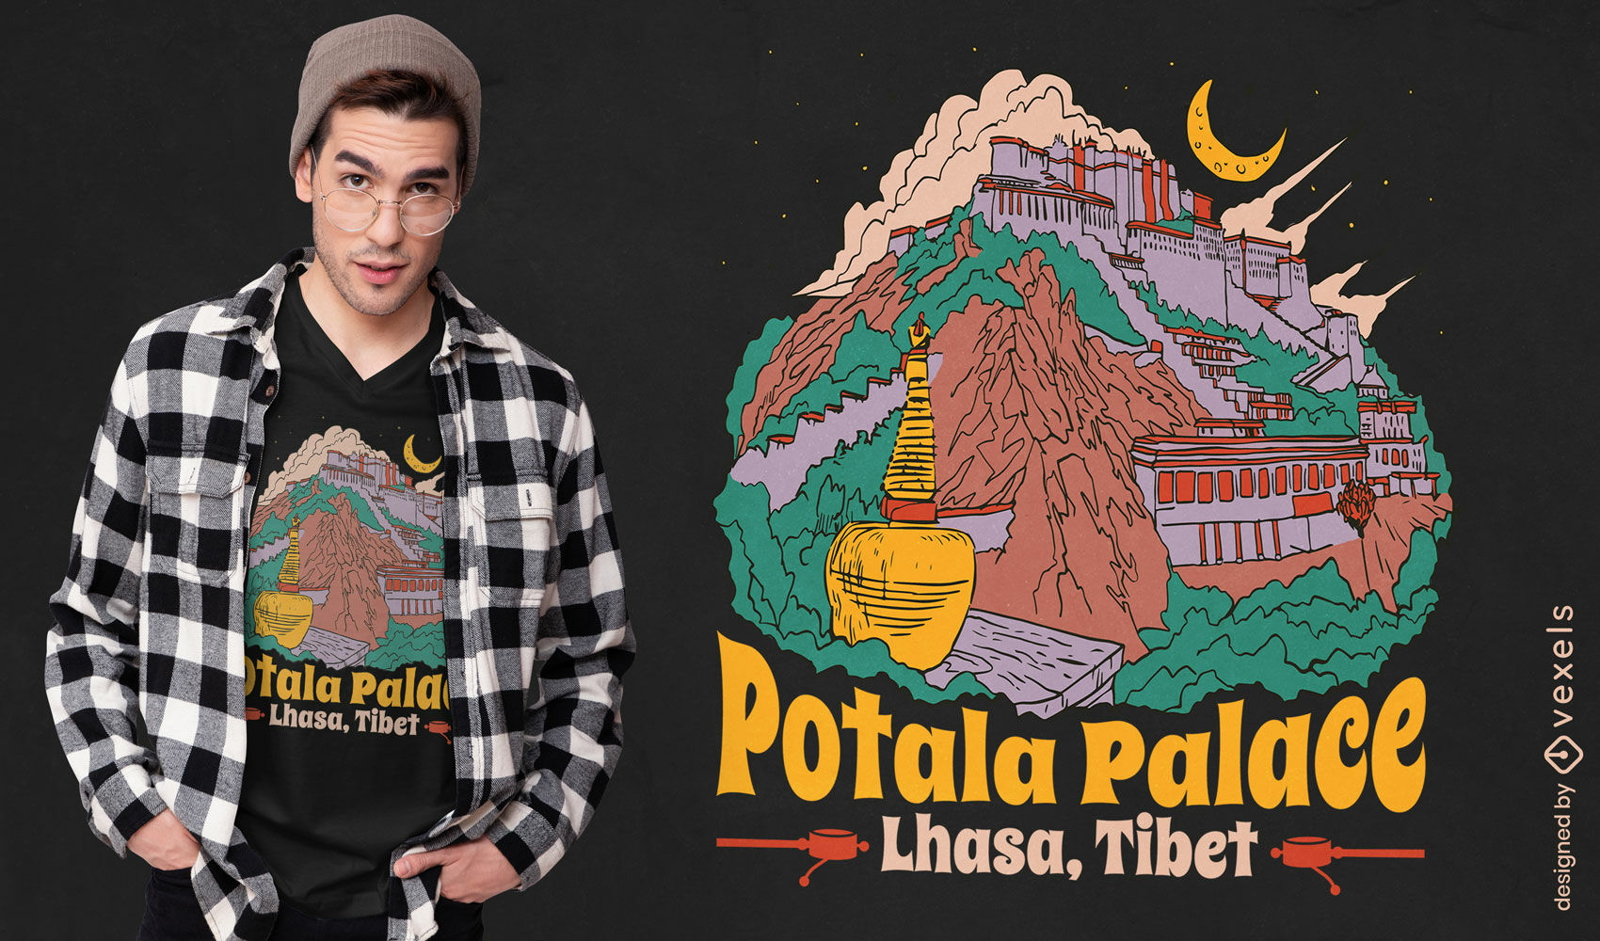 Potala palace t-shirt design